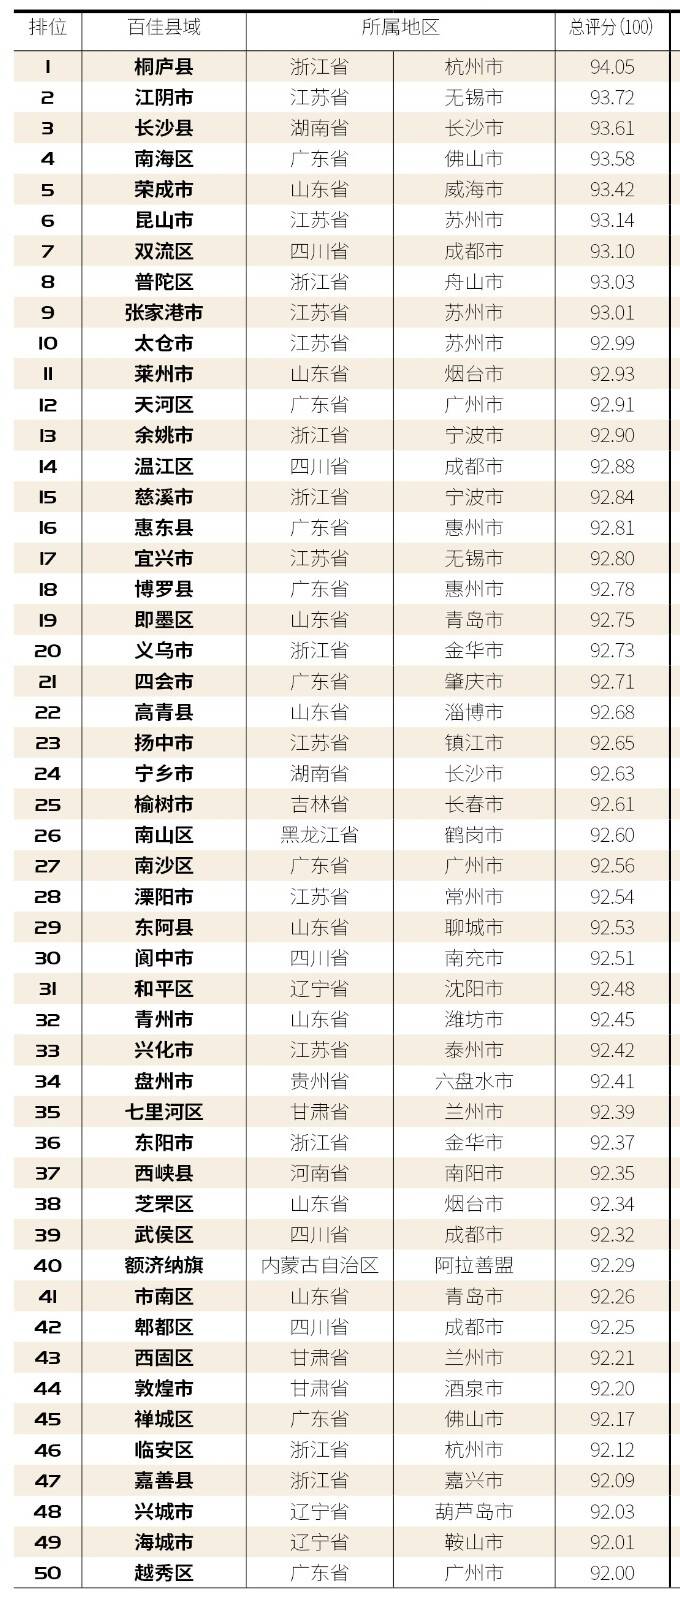 2020年幸福感排名前_好消息!扬州入选“2020中国最具幸福感城市”​!还有